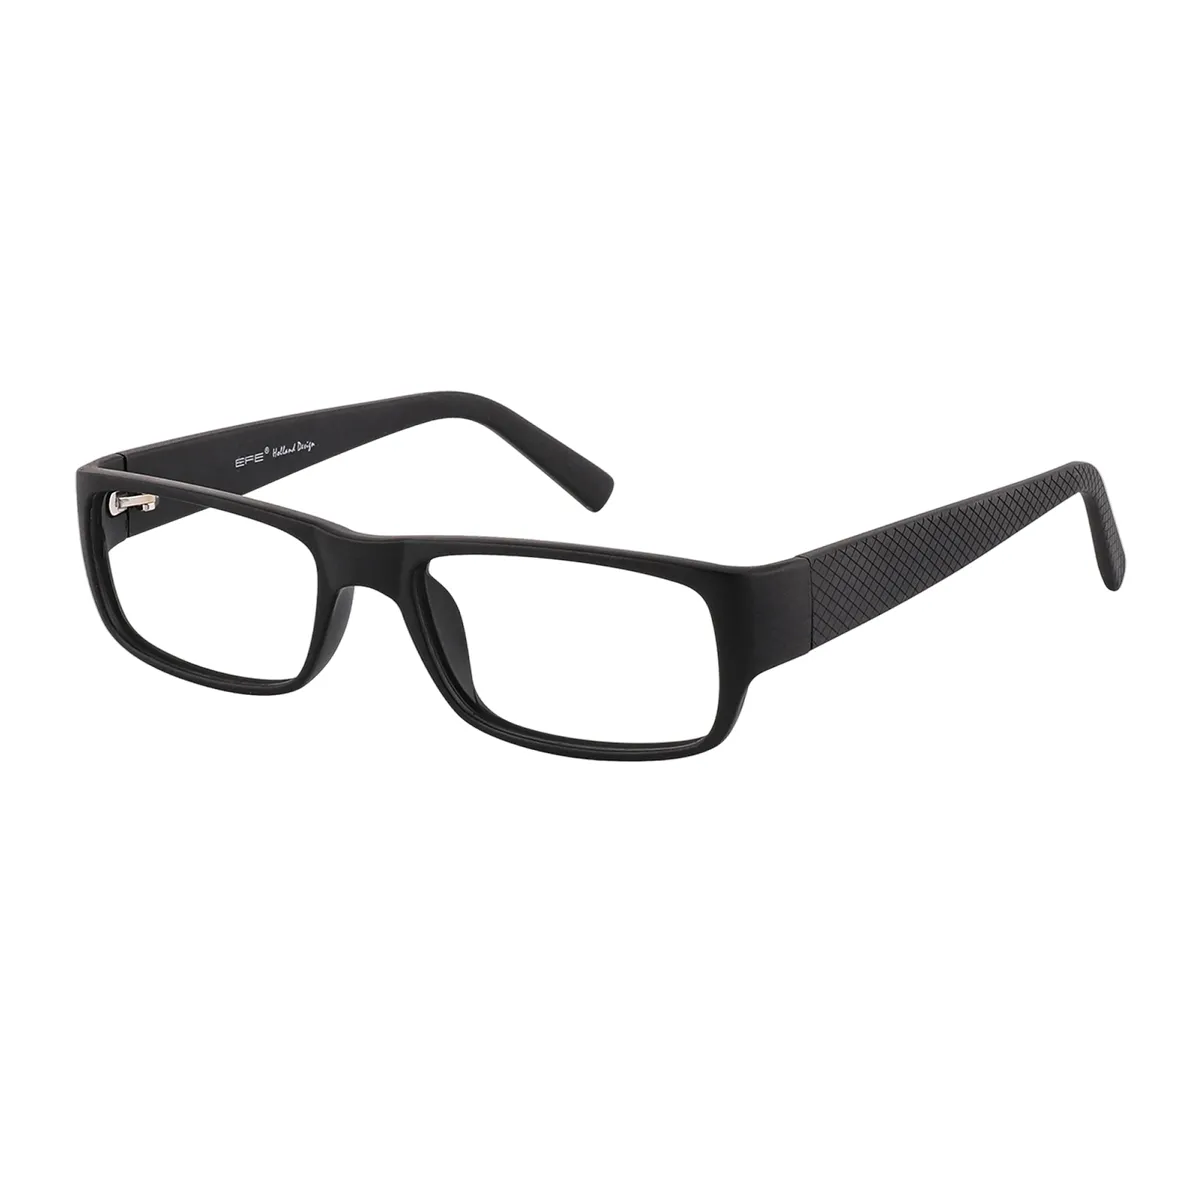 Sams - Rectangle Black Glasses for Men & Women